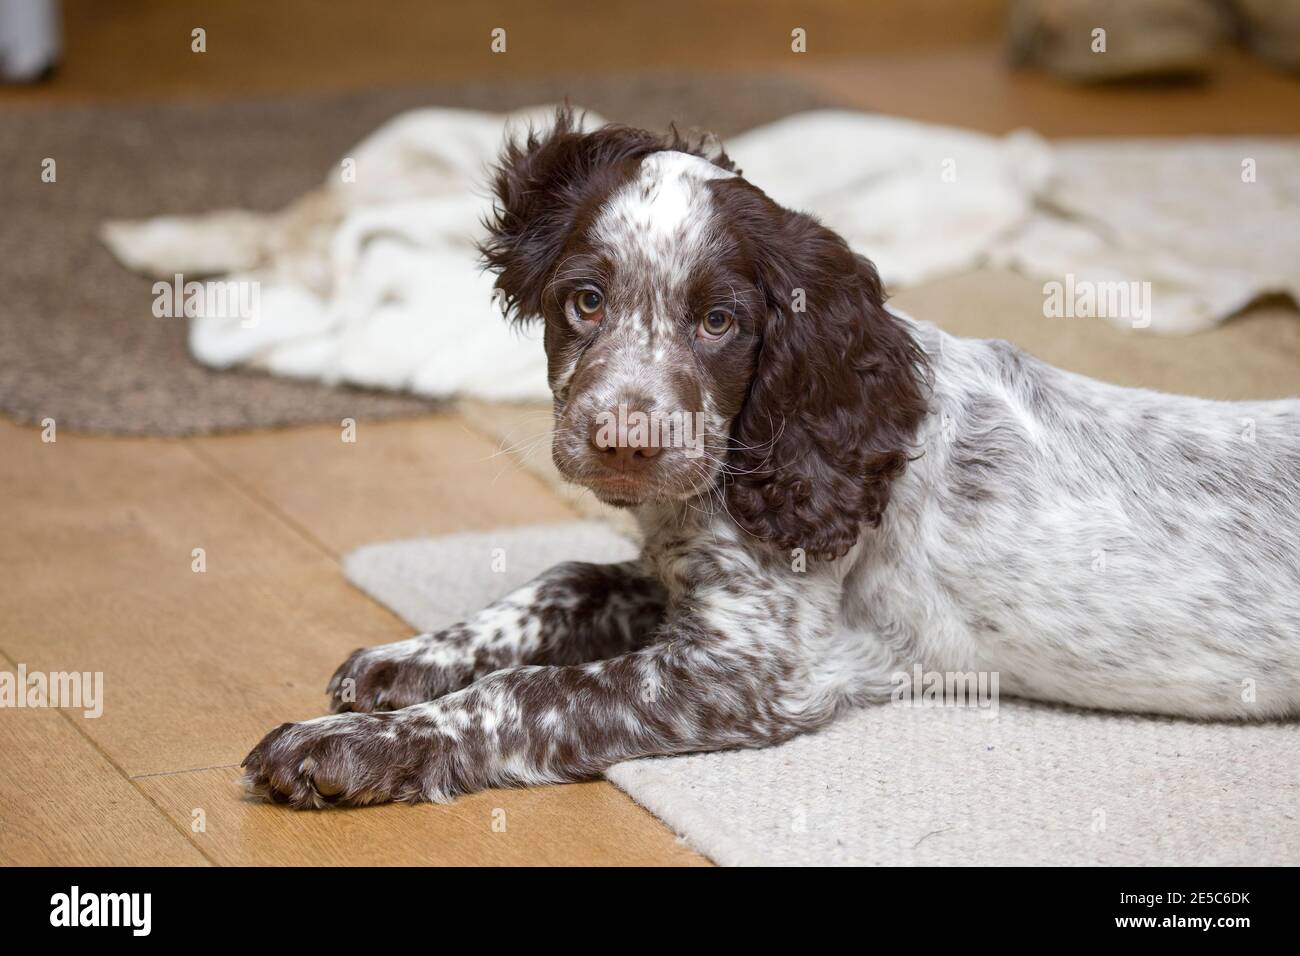 Field Spaniel puppy sat on floor Stock Photo